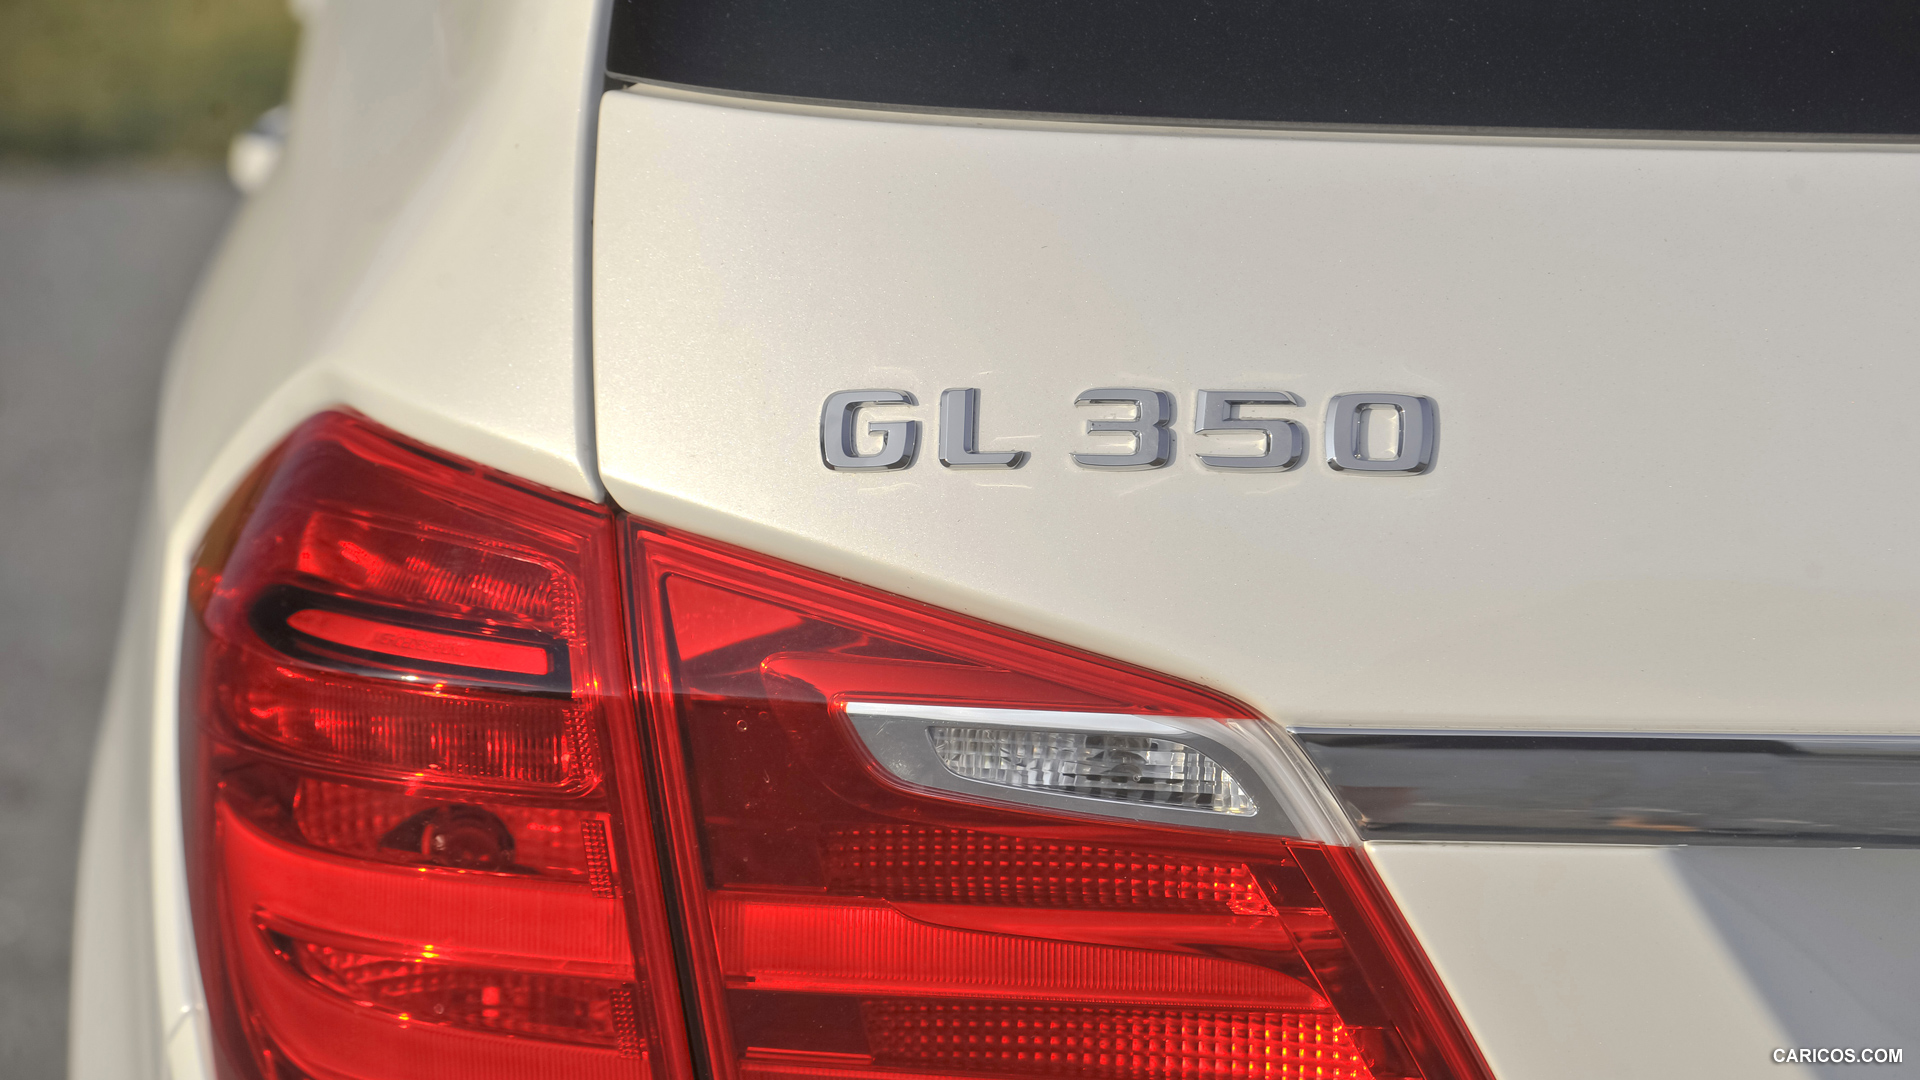 2013 Mercedes-Benz GL-Class GL350 - Rear Light, #67 of 259